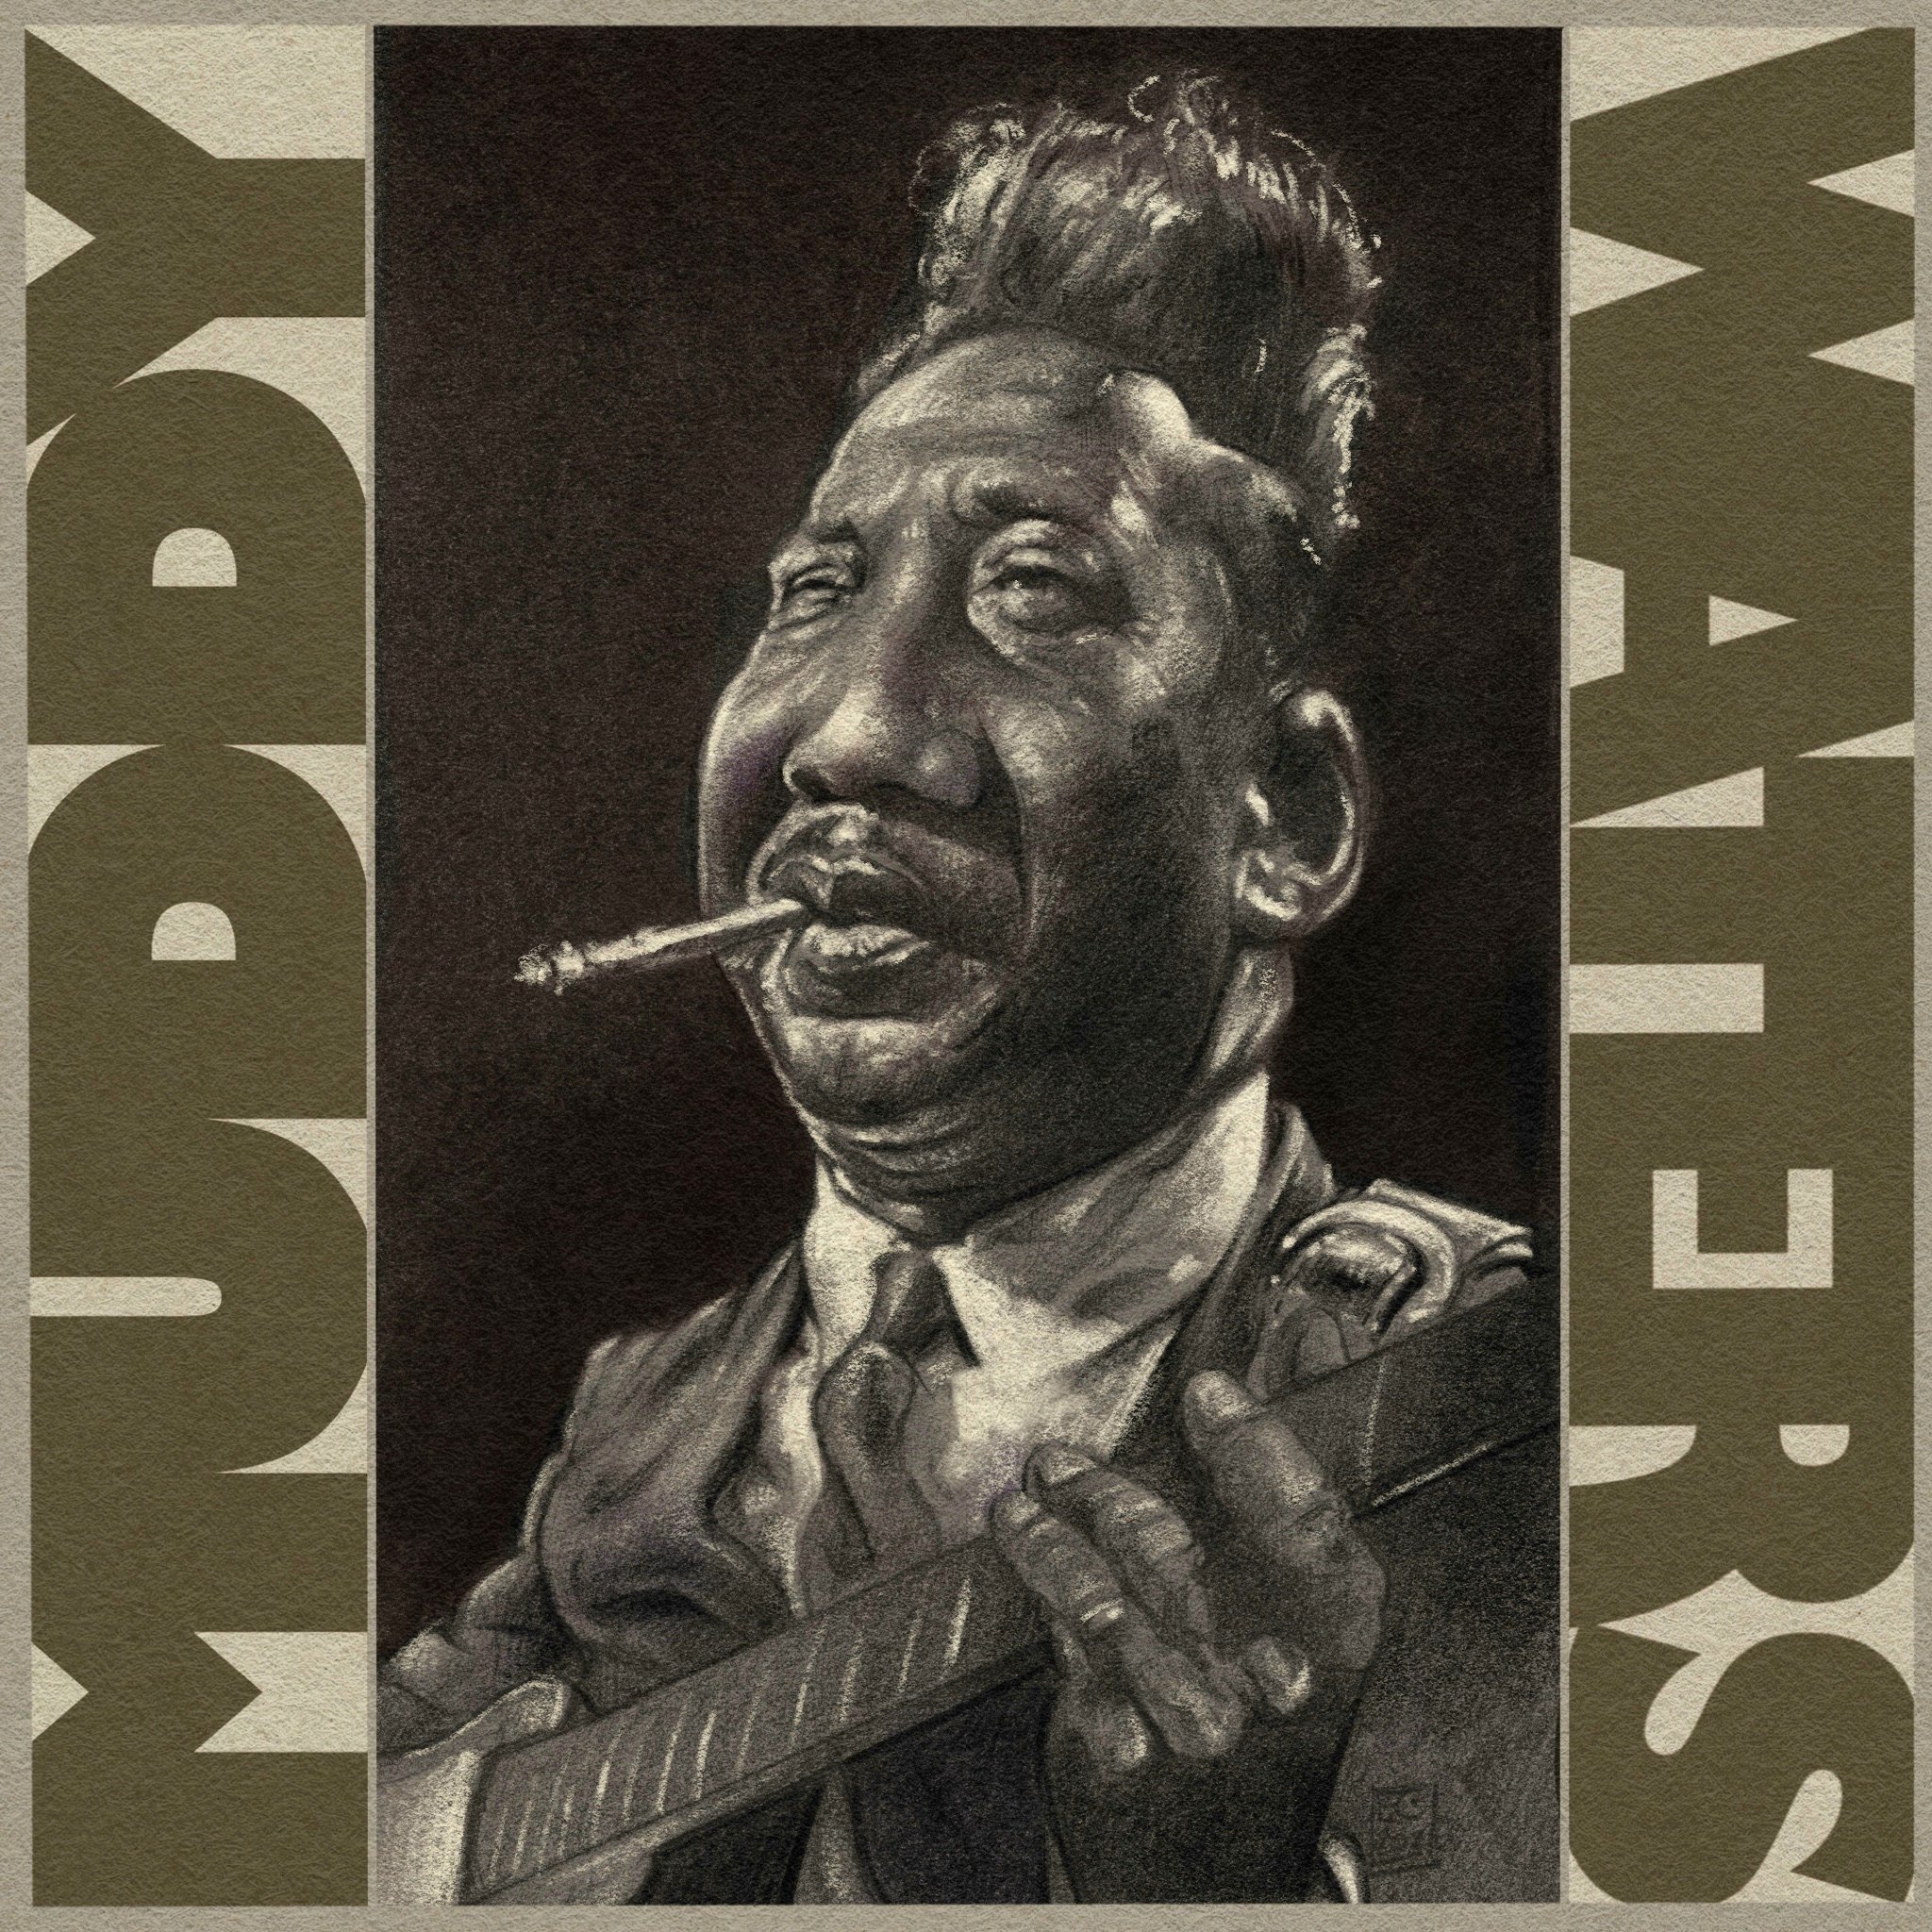 Muddy Waters - April 5, 1913